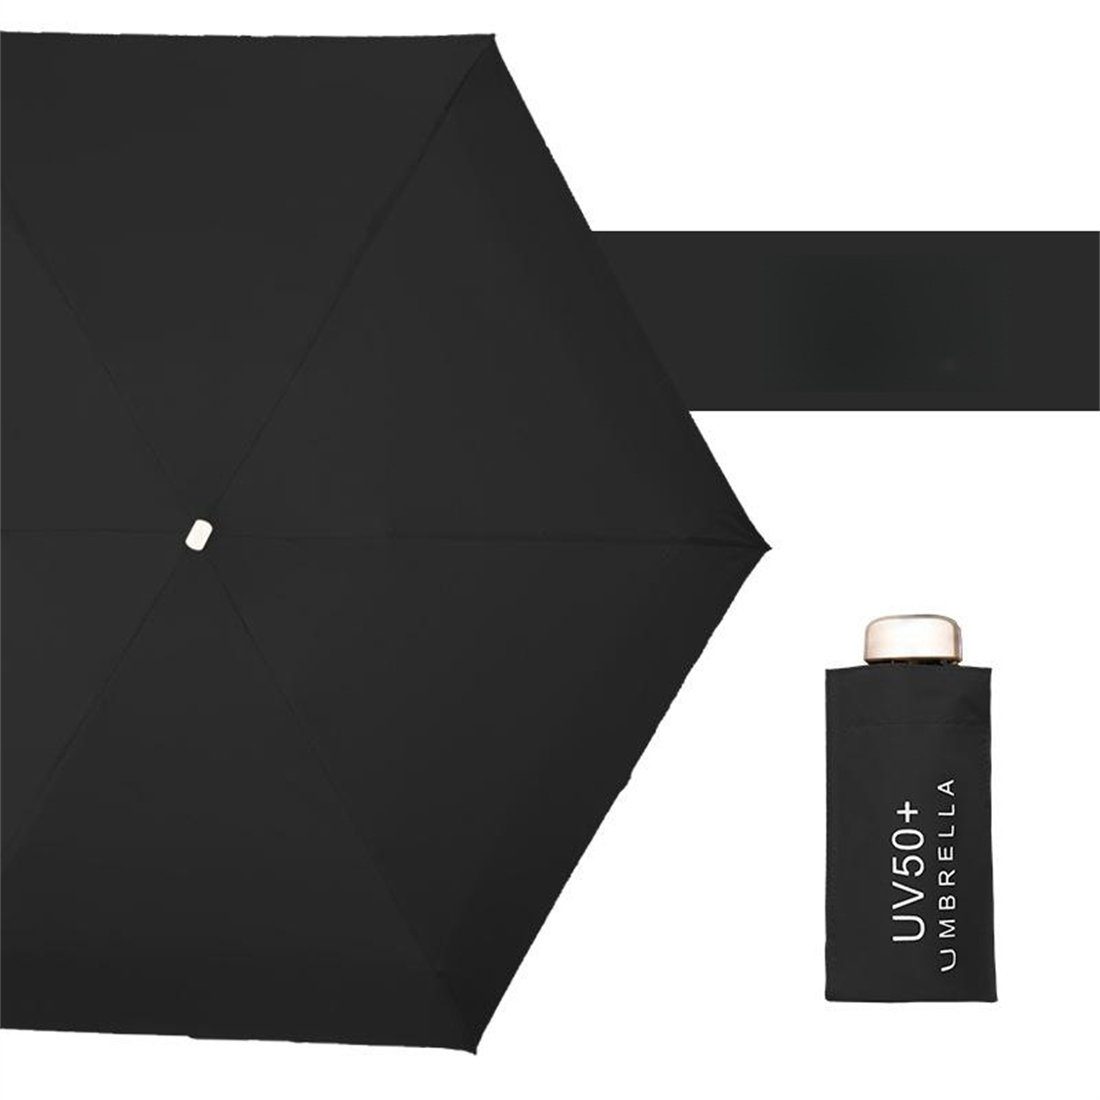 für für Taschenregenschirm Sonnenschutz winzig unterwegs manual schwarz damen Taschenschirme klein und vor Sonne schützt UV-Schutz Regenschirm, YOOdy~ Regen small